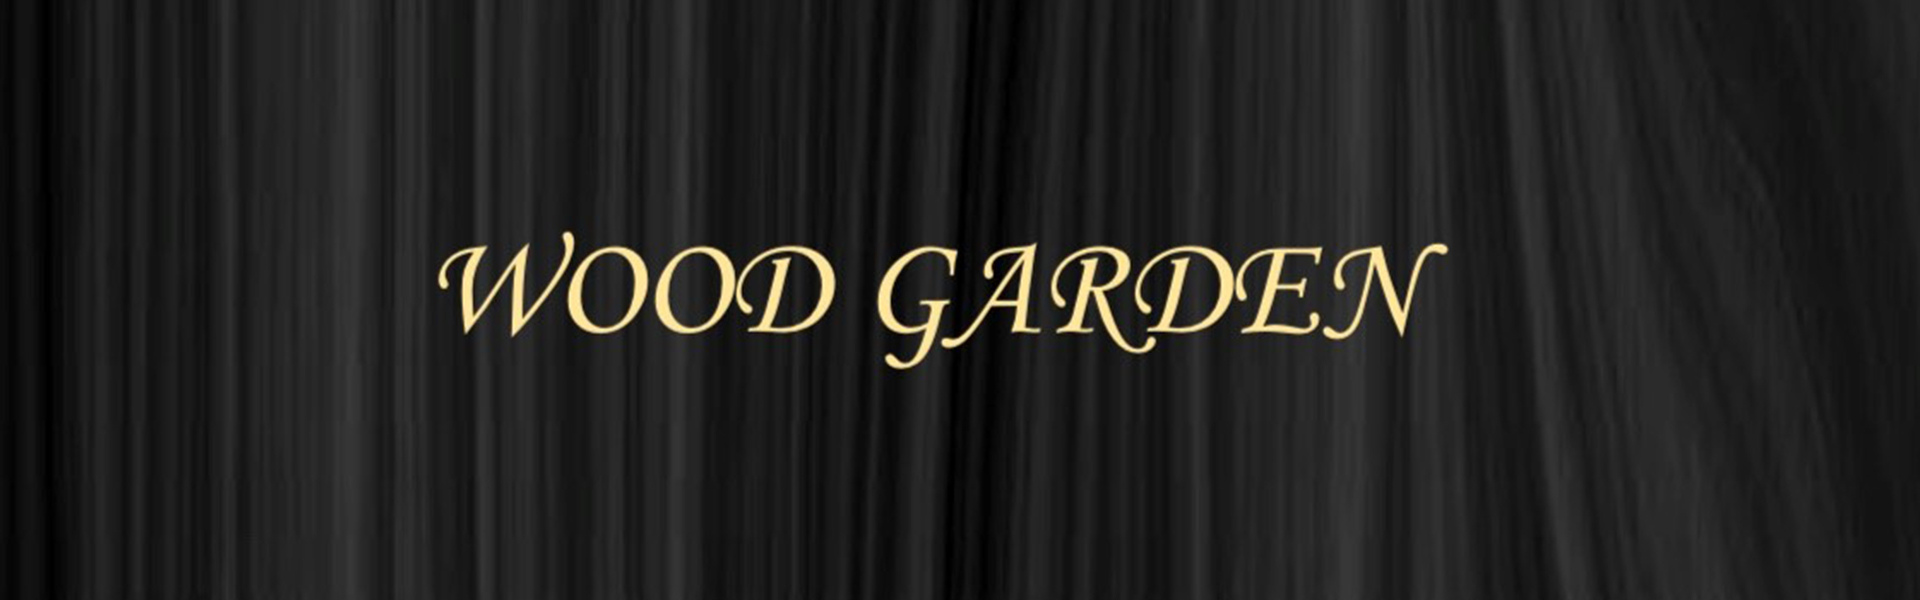 Wood Garden Patja Premium, rahi keltainen 